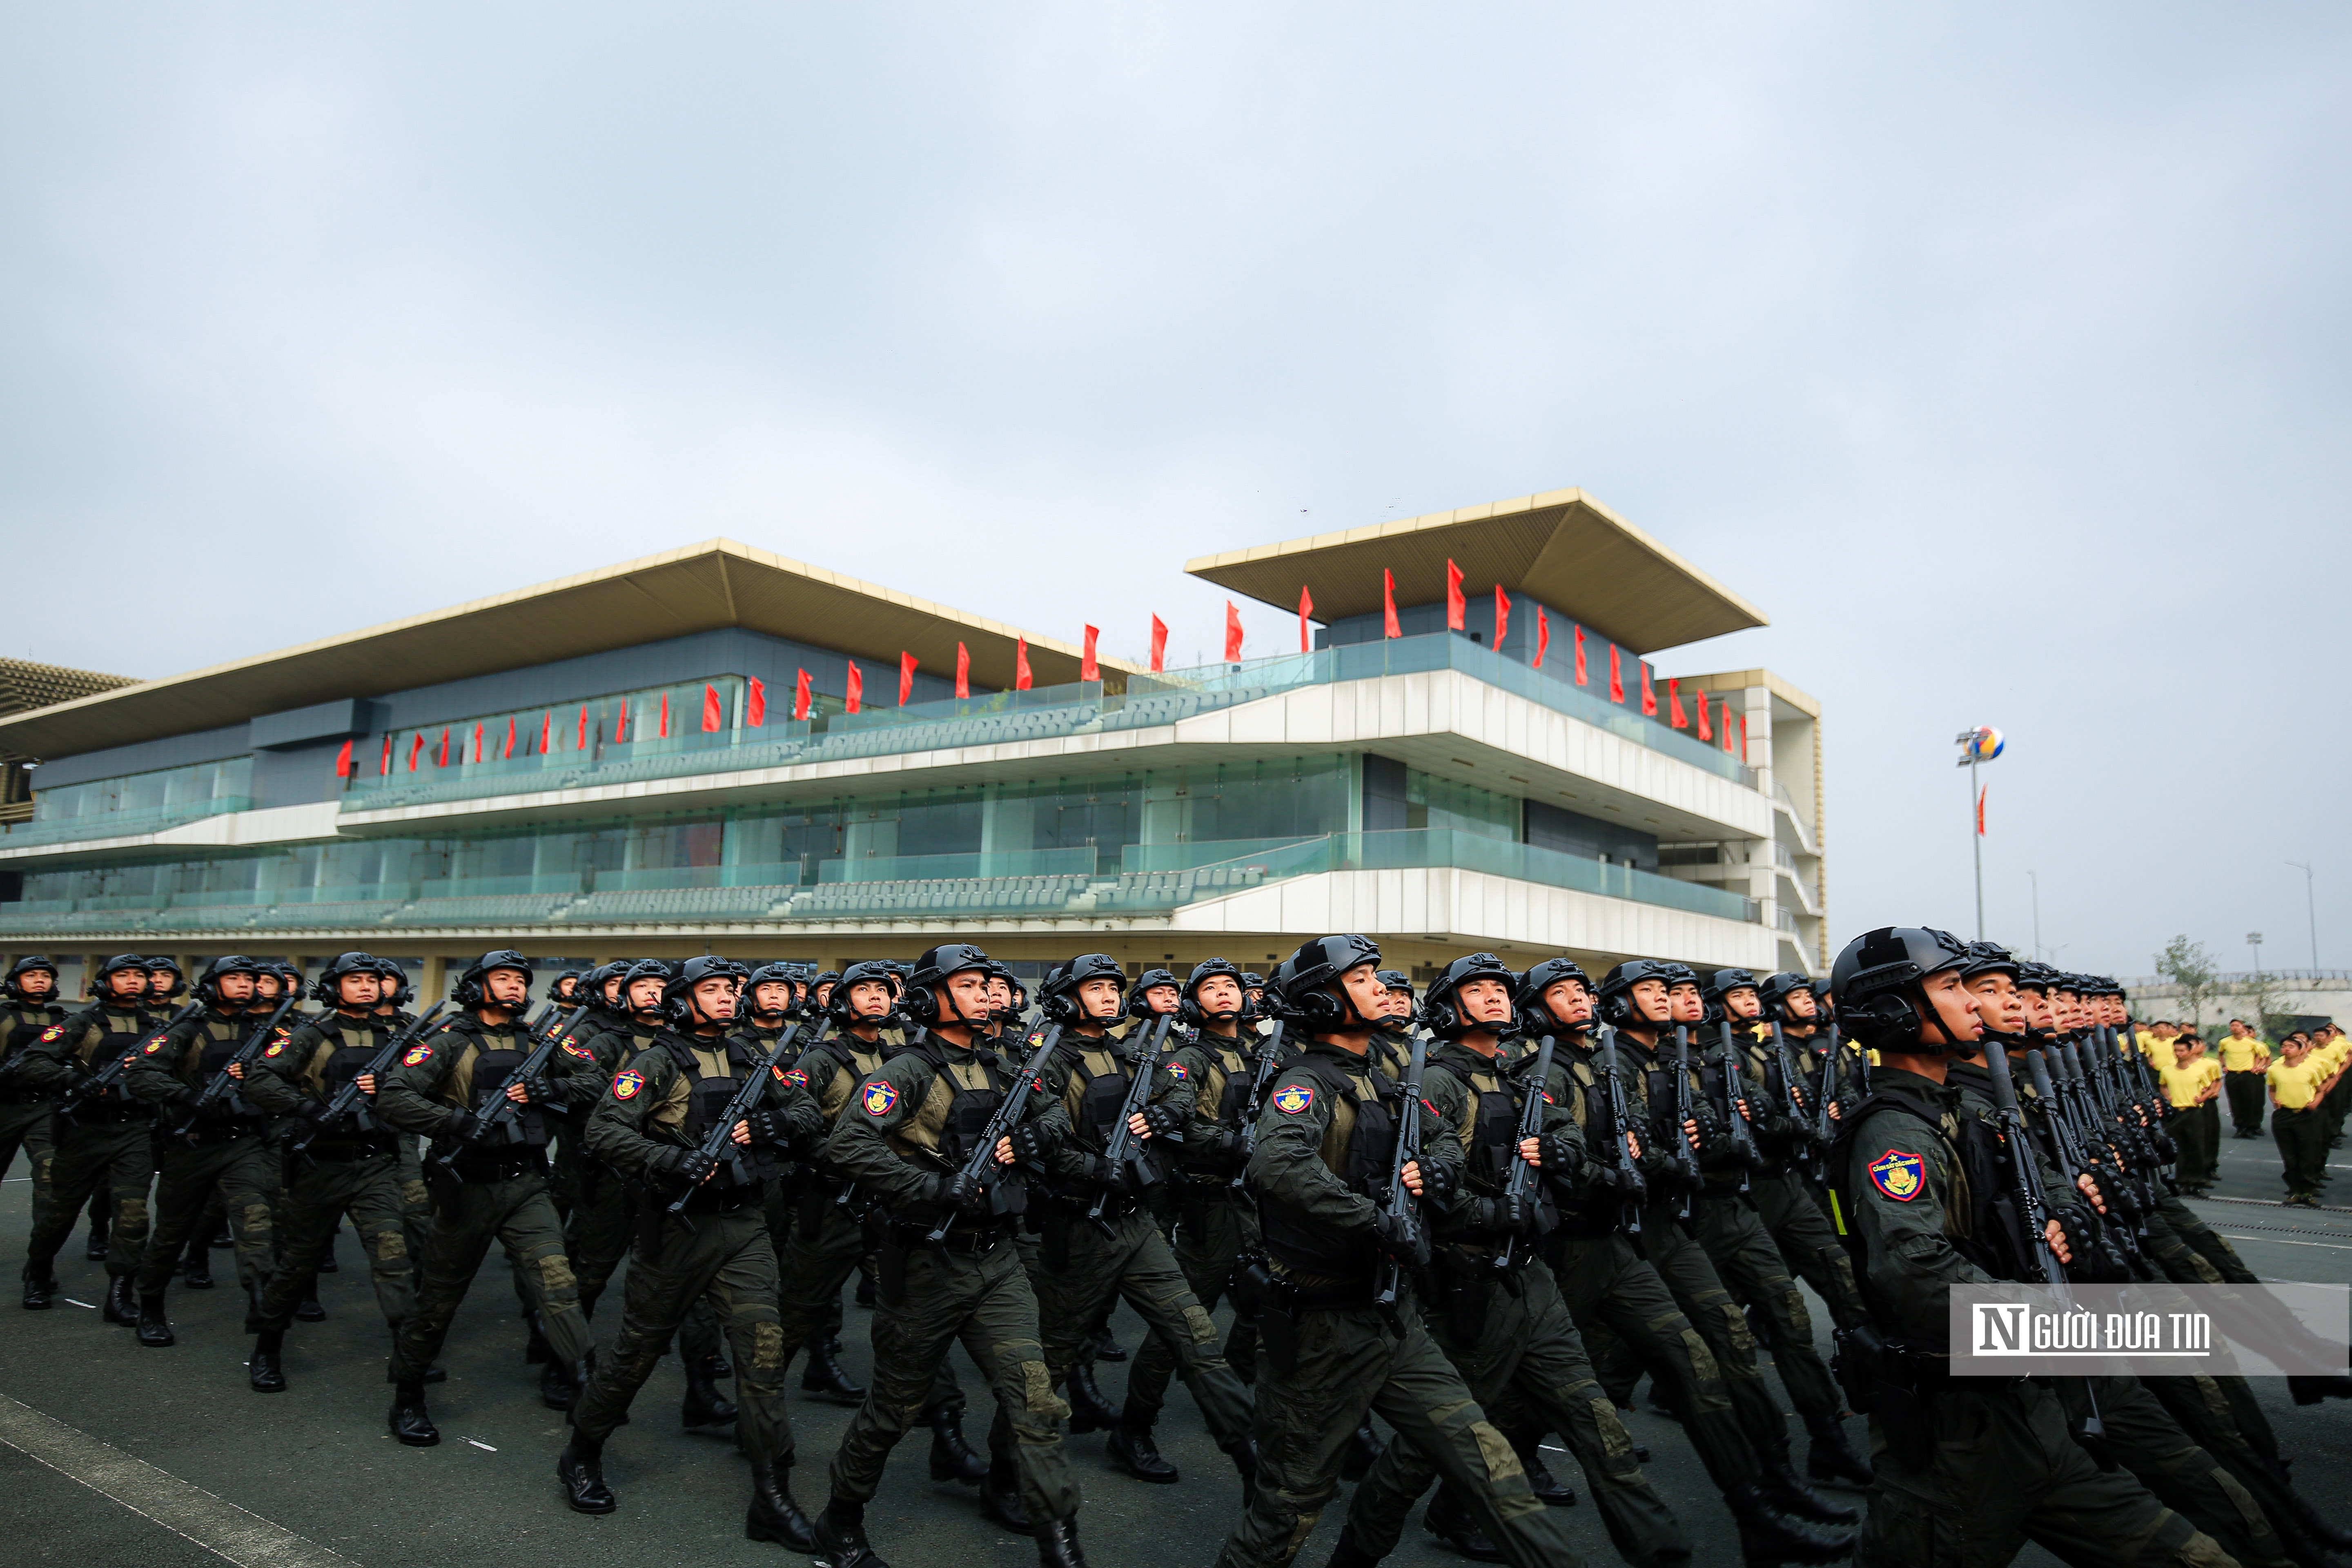 Sự kiện - Mãn nhãn xem màn diễu hành oai nghiêm của lực lượng Cảnh sát cơ động (Hình 14).